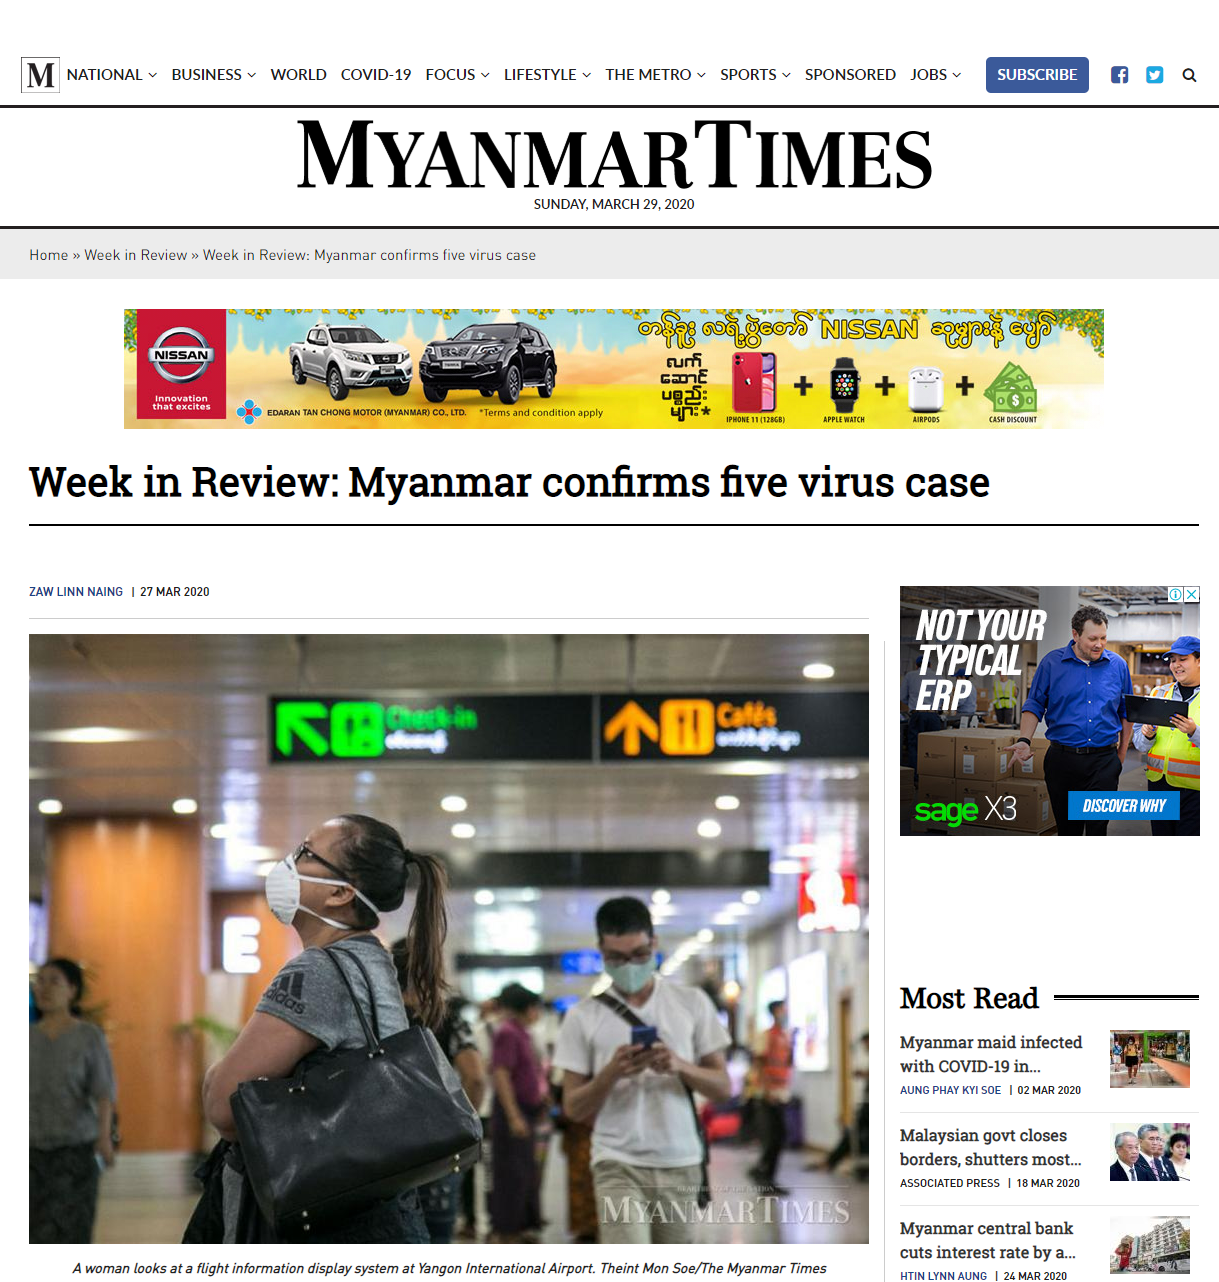 ﾐｬﾝﾏｰ 新型ｺﾛﾅ肺炎感染者が5人に ミャンマーニュース